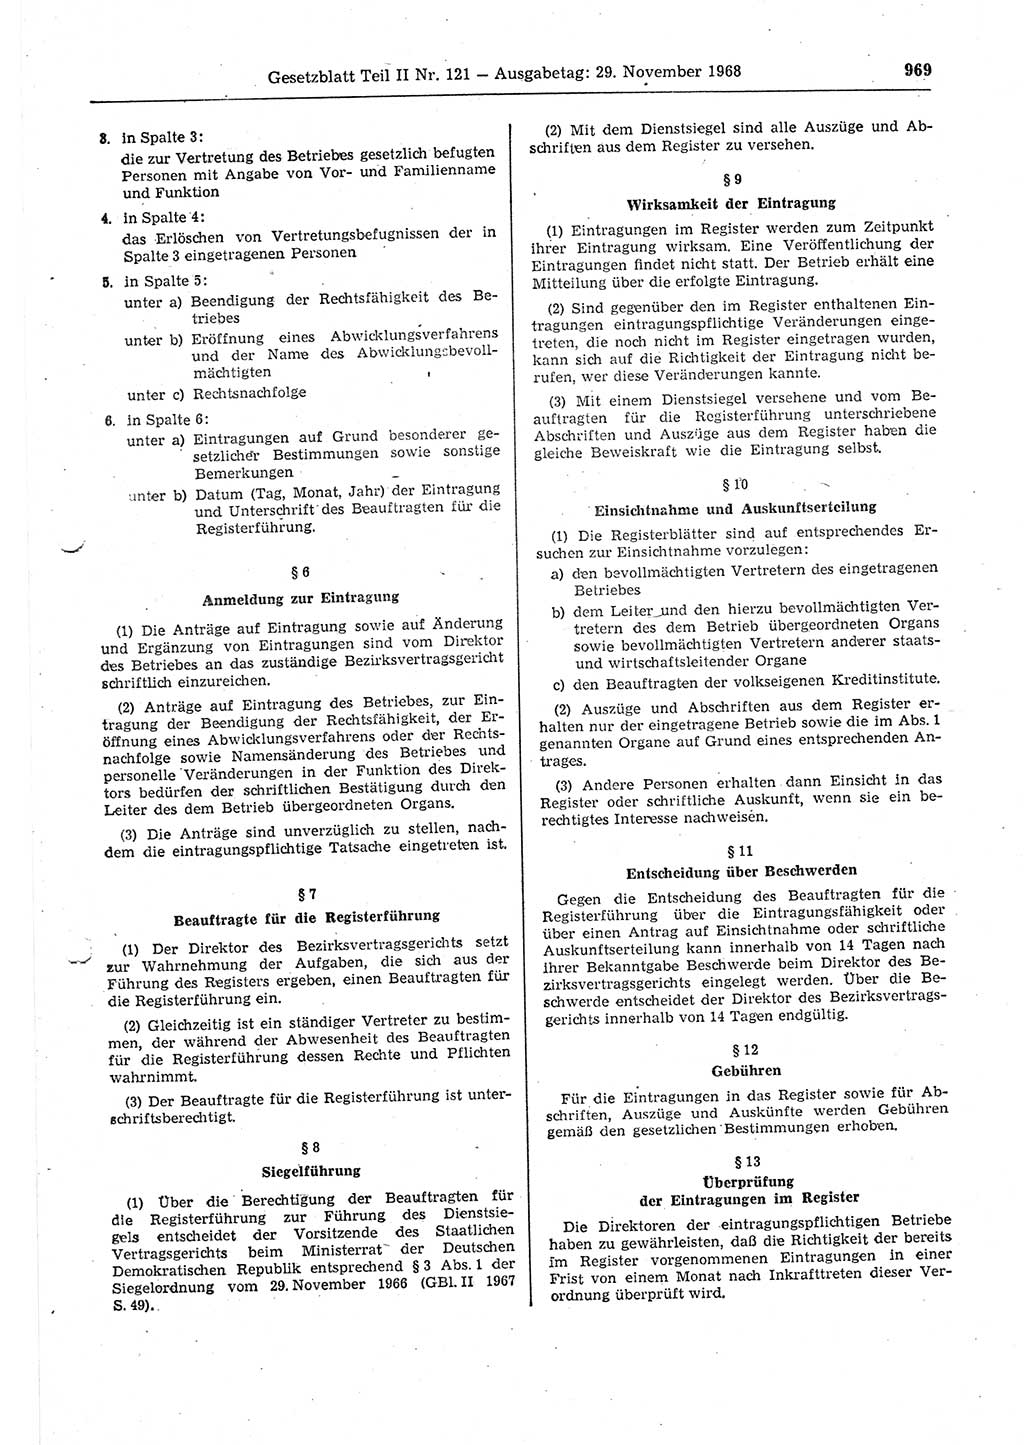 Gesetzblatt (GBl.) der Deutschen Demokratischen Republik (DDR) Teil ⅠⅠ 1968, Seite 969 (GBl. DDR ⅠⅠ 1968, S. 969)